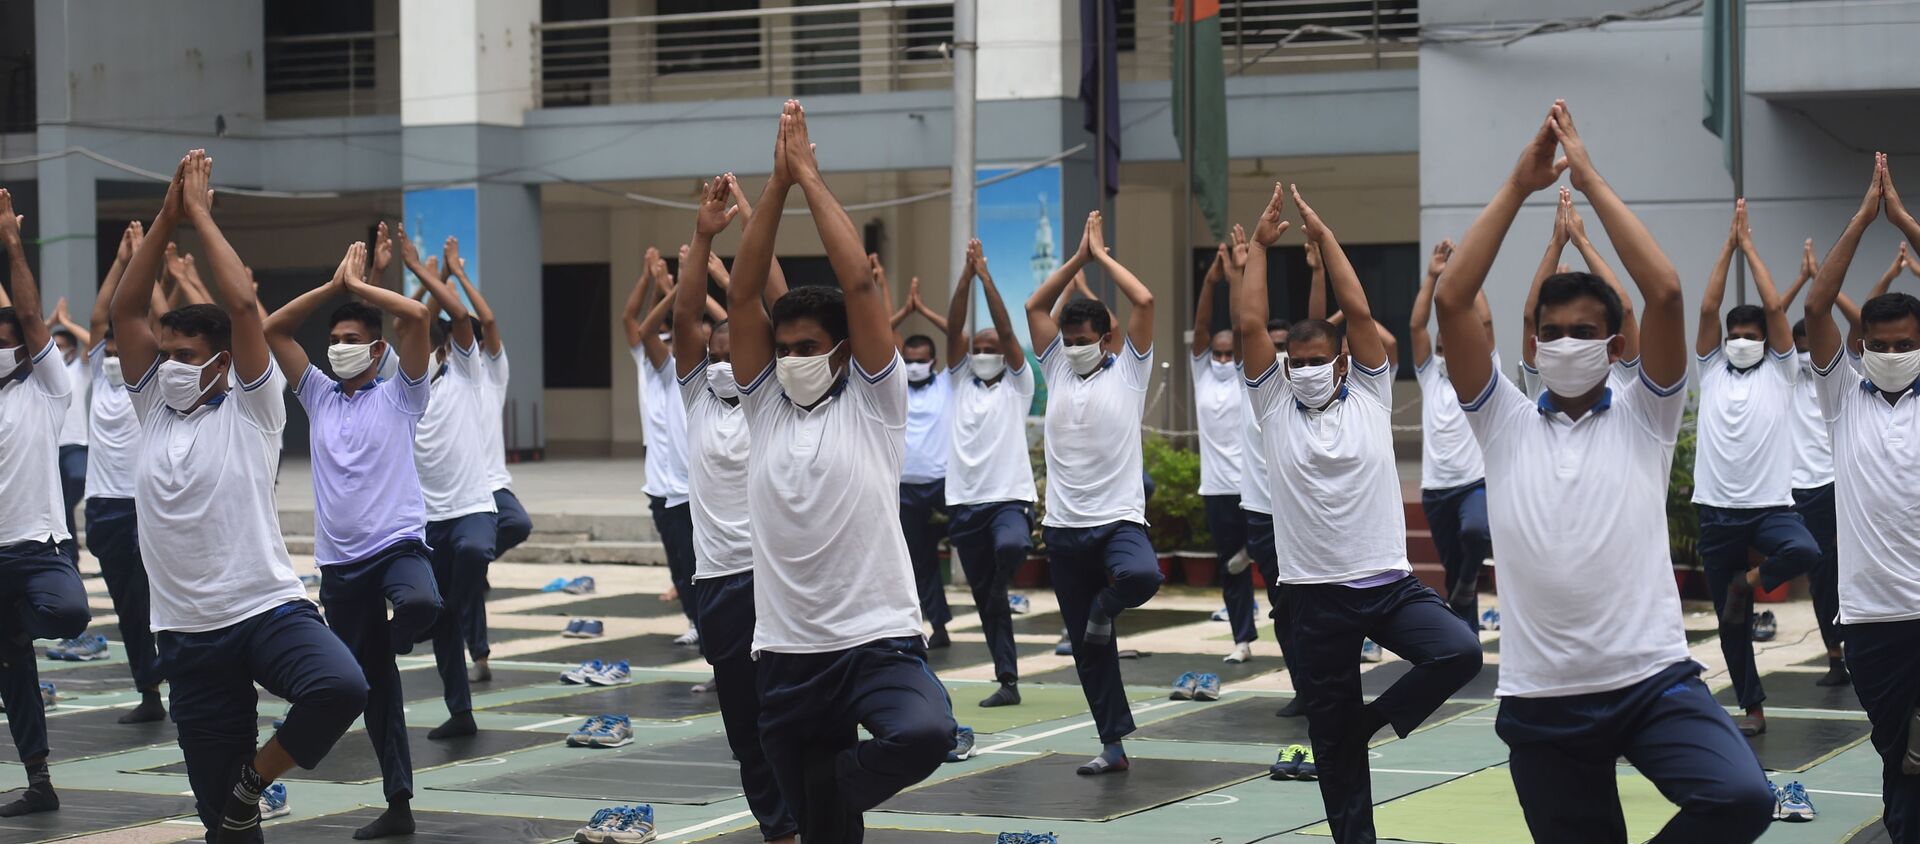 Bangladeş polisi, salgın süresince daha sağlıklı olabilmek adına toplu yoga seansı gerçekleştirdi. - Sputnik Türkiye, 1920, 08.06.2020